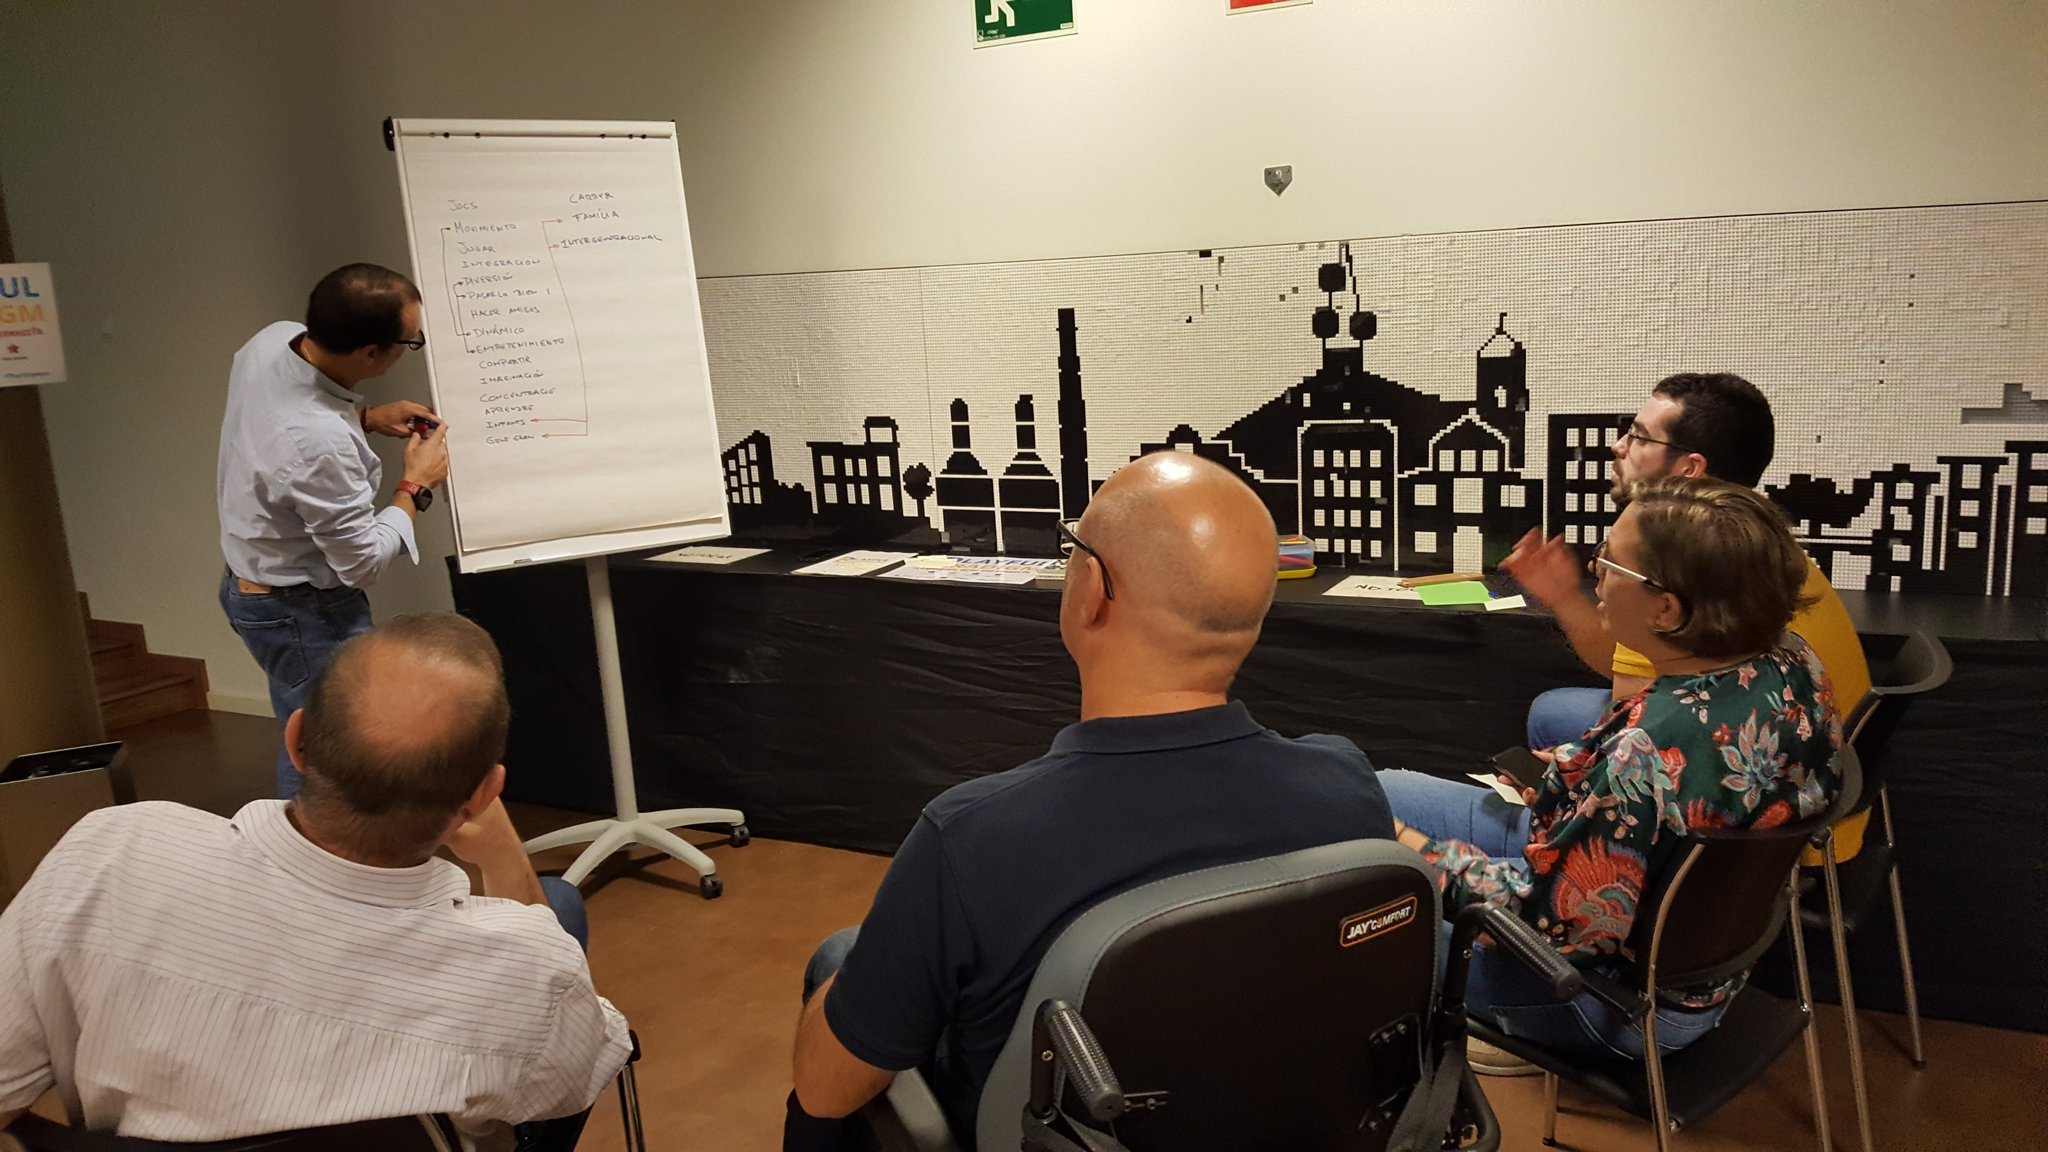 Esplugues de Llobregat ULG Meeting in October 2019 - Discussion